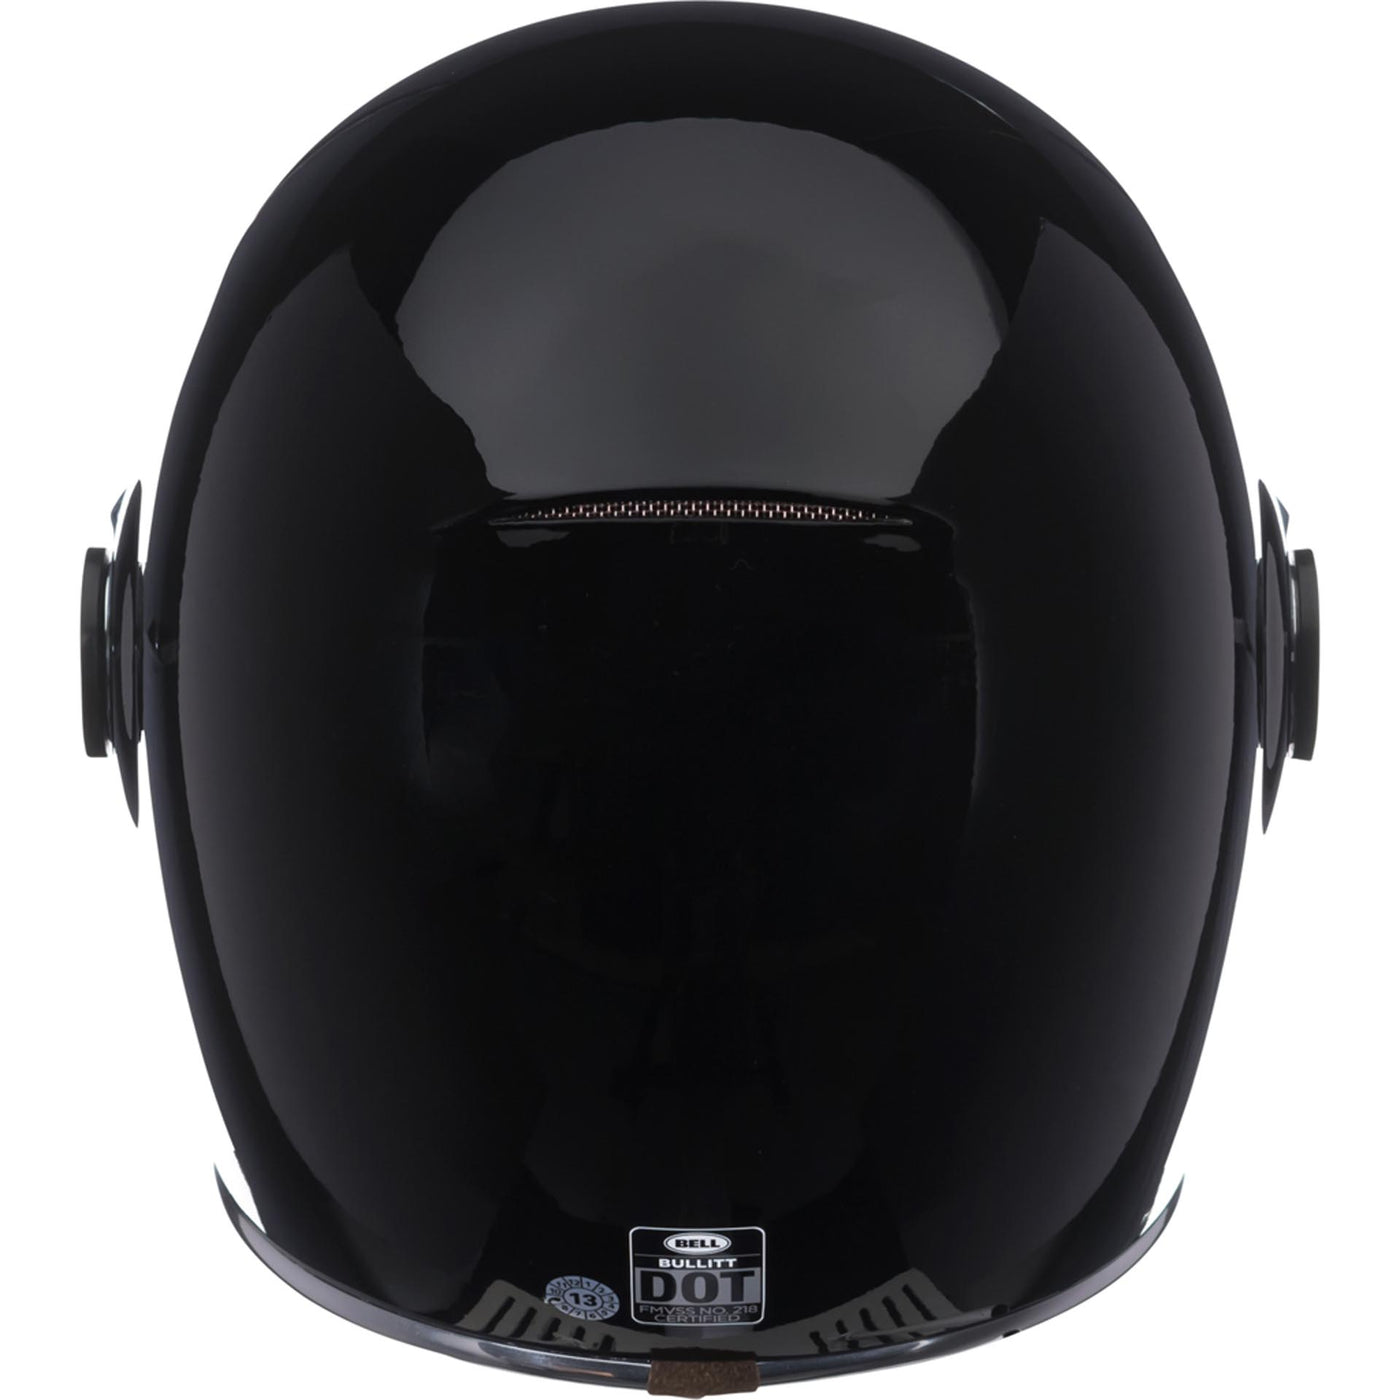 Bell Bullitt Motorcycle Full Face Helmet Gloss Black